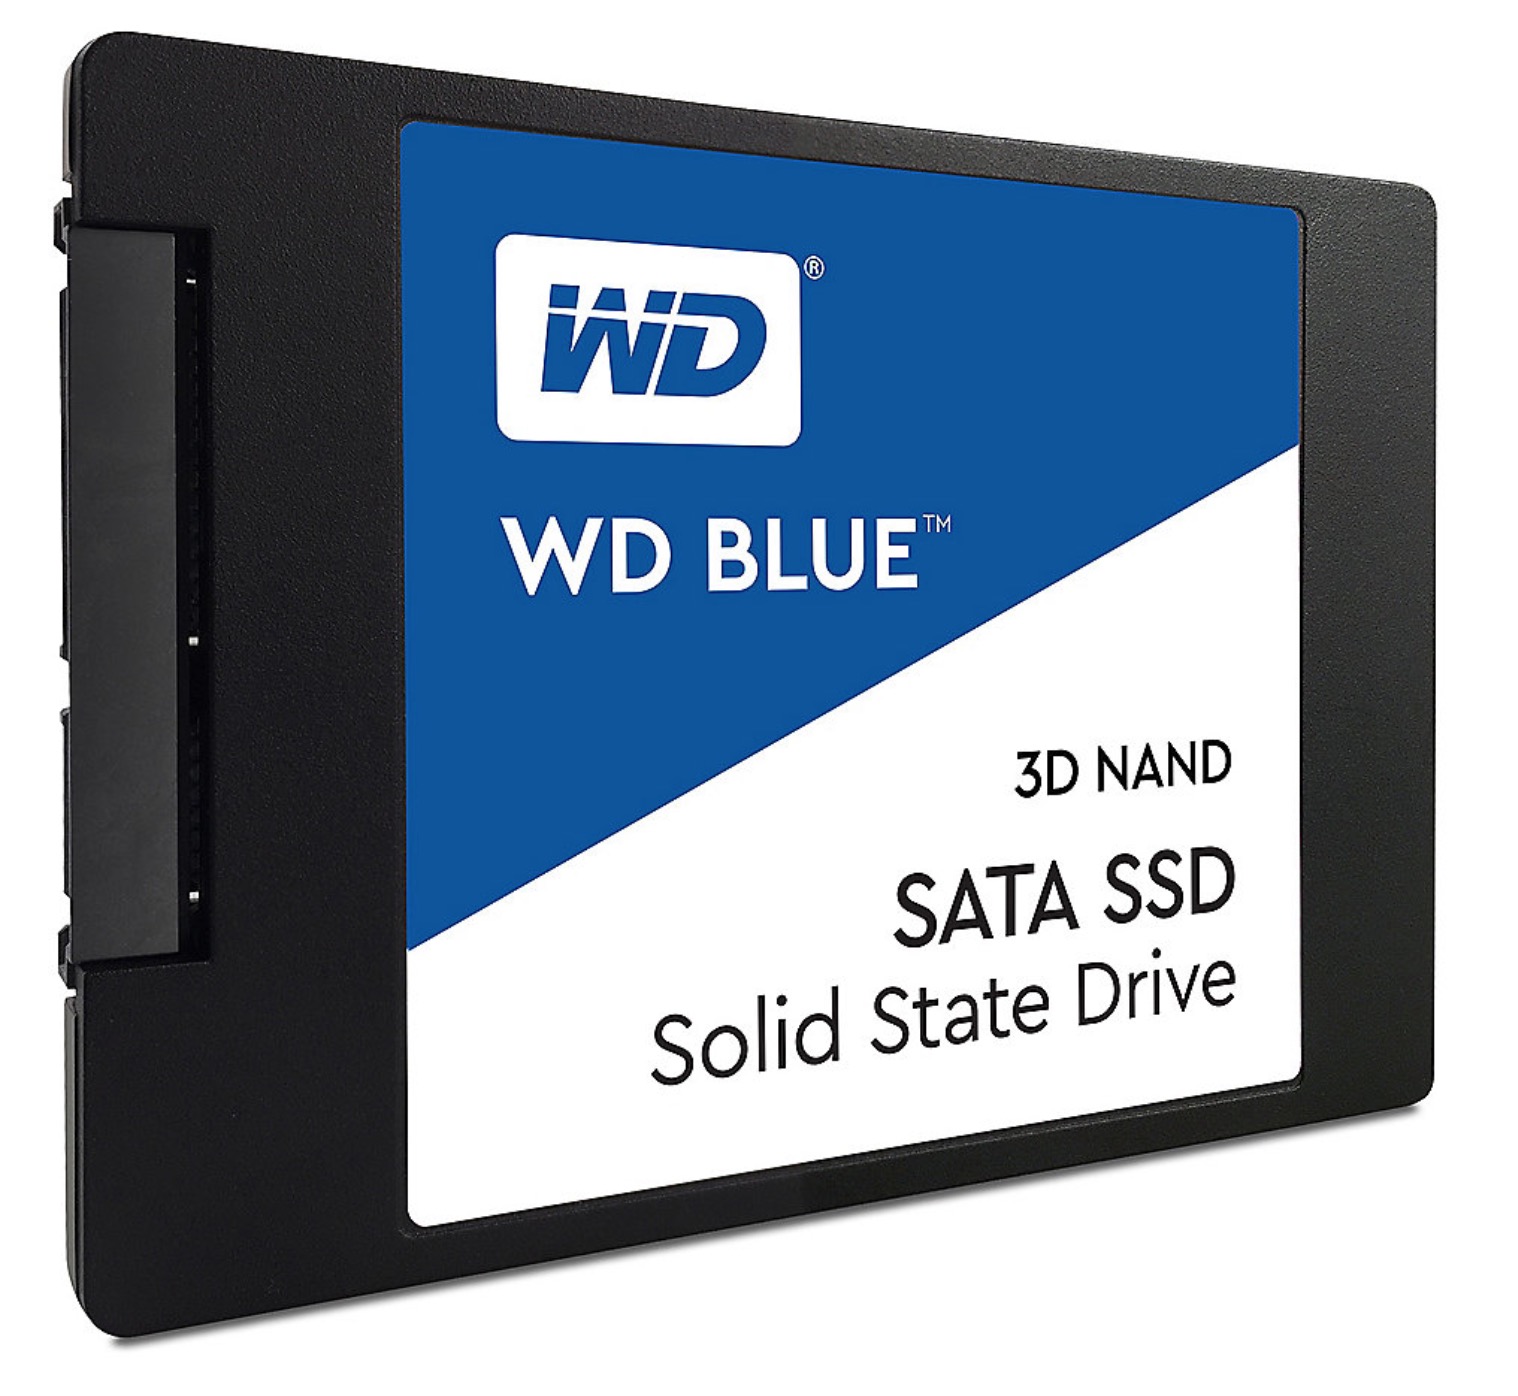 WD Blue 3D NAND SATA SSD 500GB für nur 69,90 Euro inkl. Versand